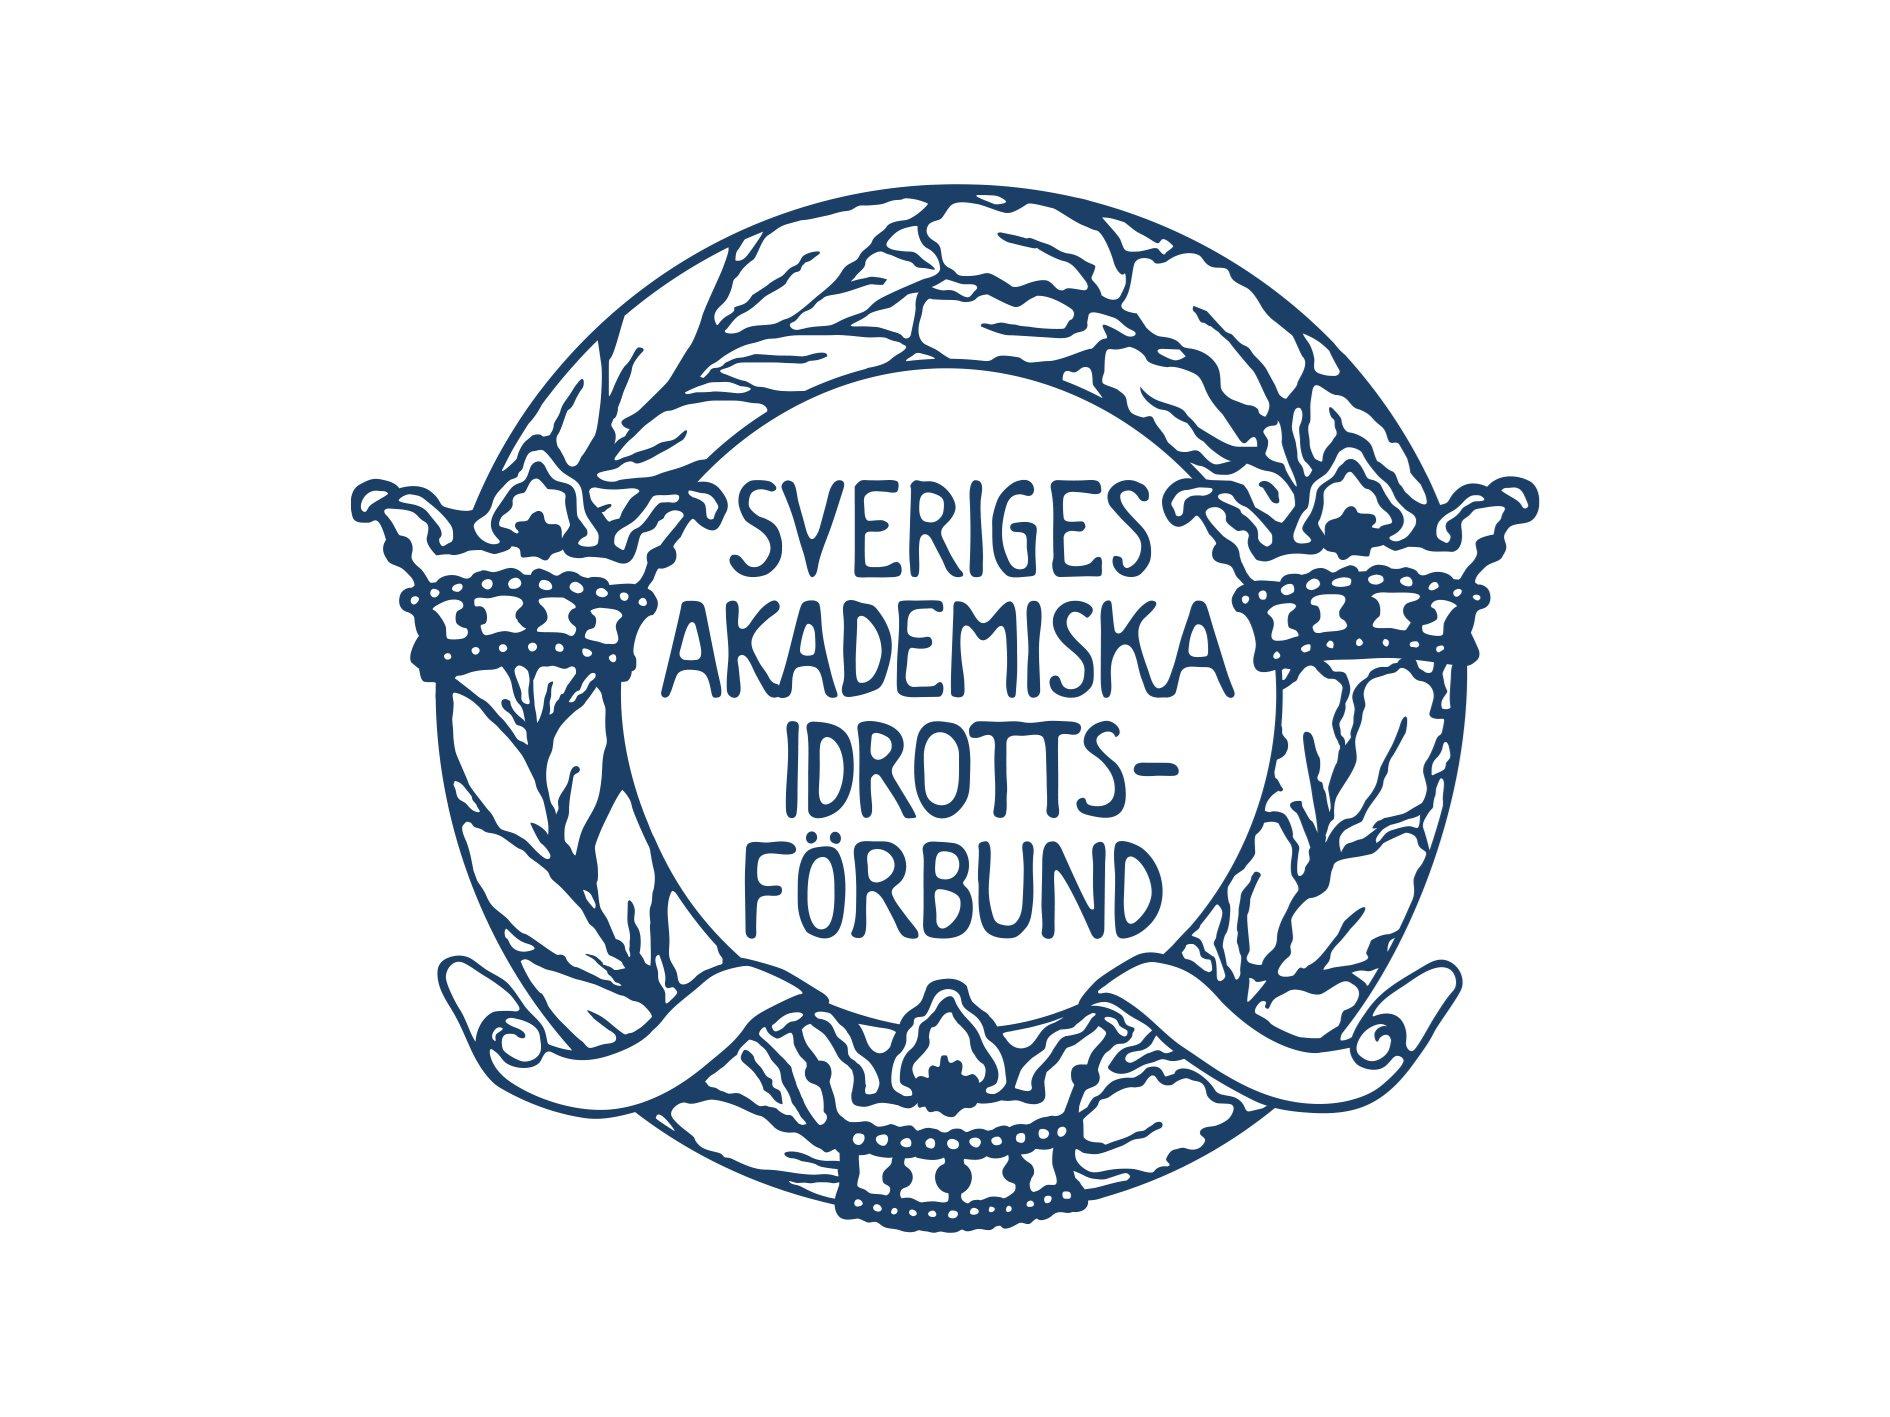 Sveriges Akademiska Idrottsförbund